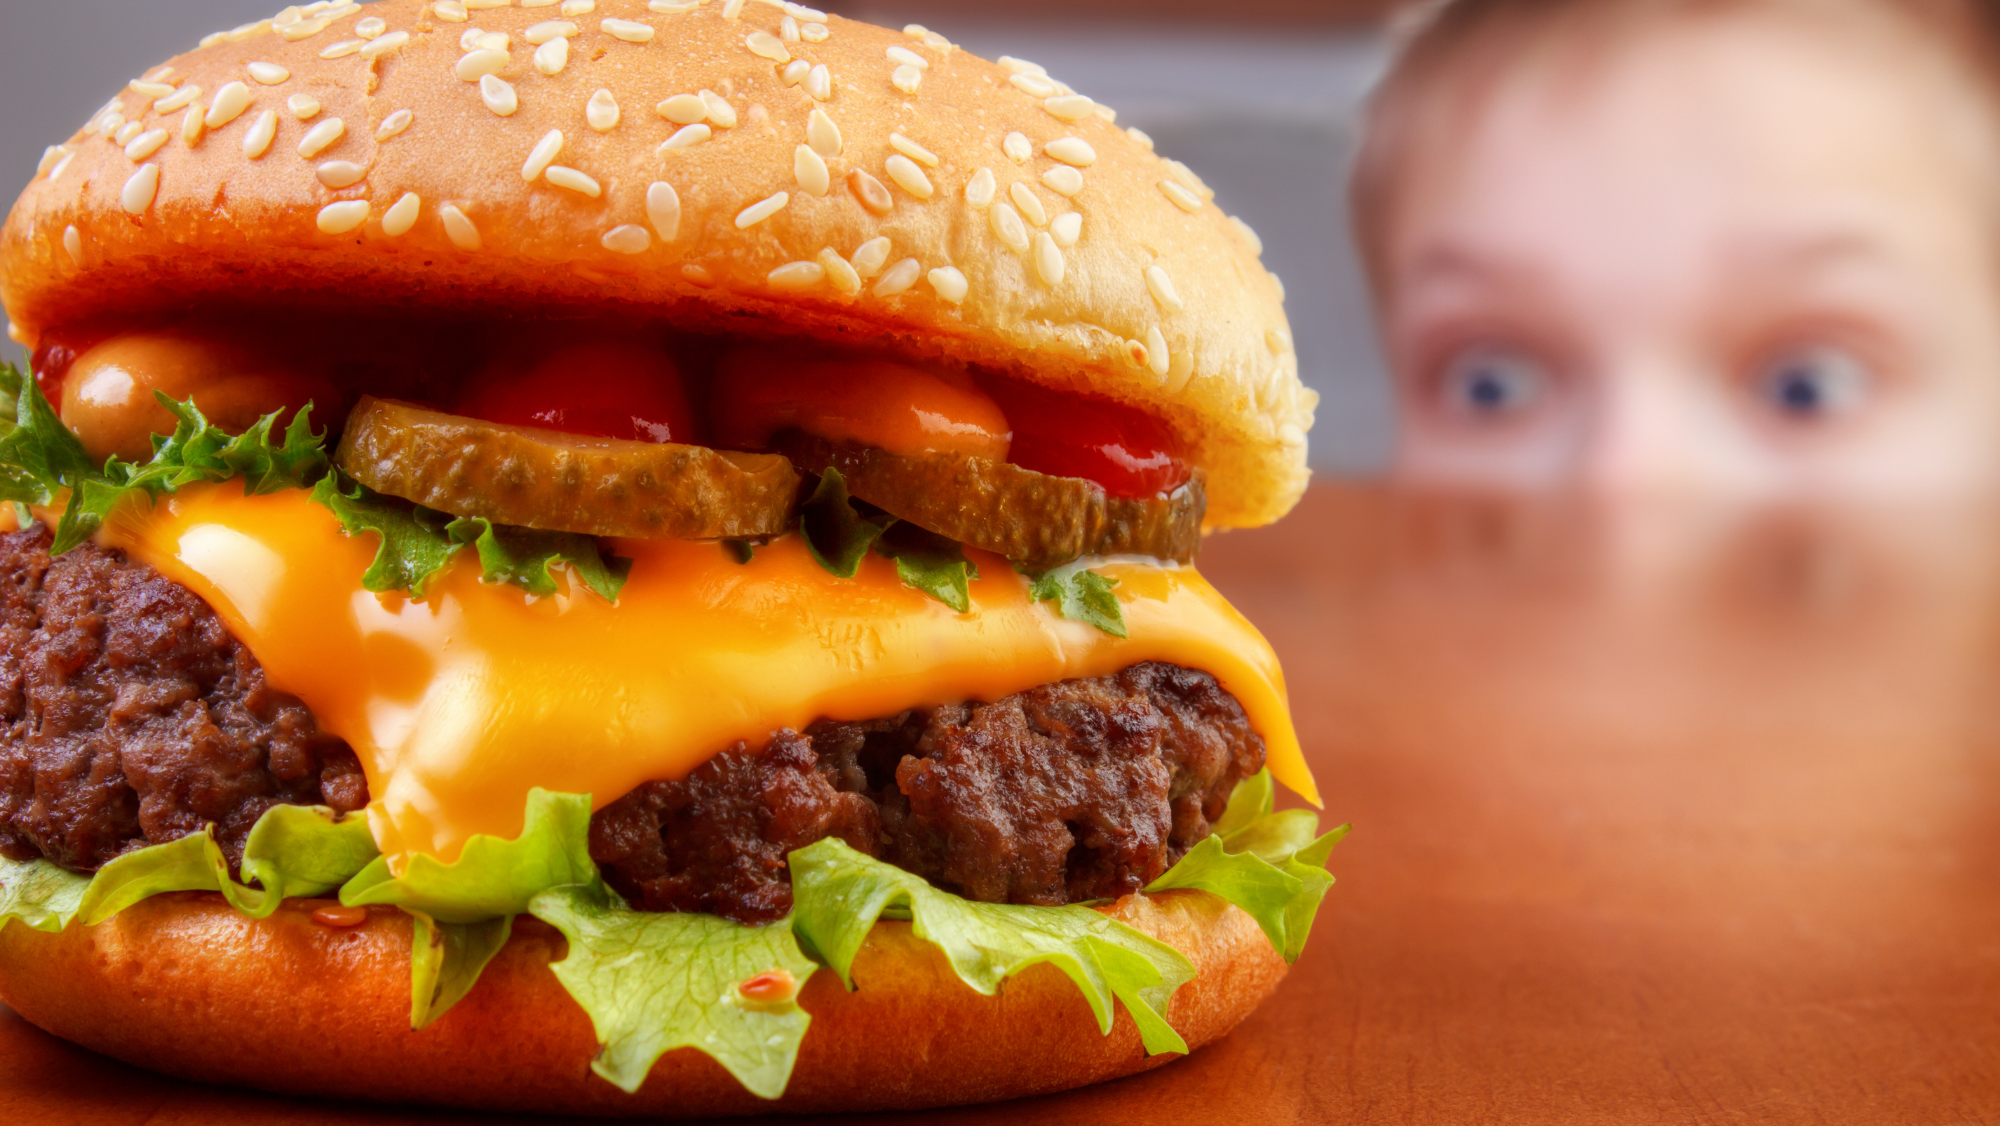 implicar Redada aritmética Países Bajos debate la edad mínima para comer hamburguesas